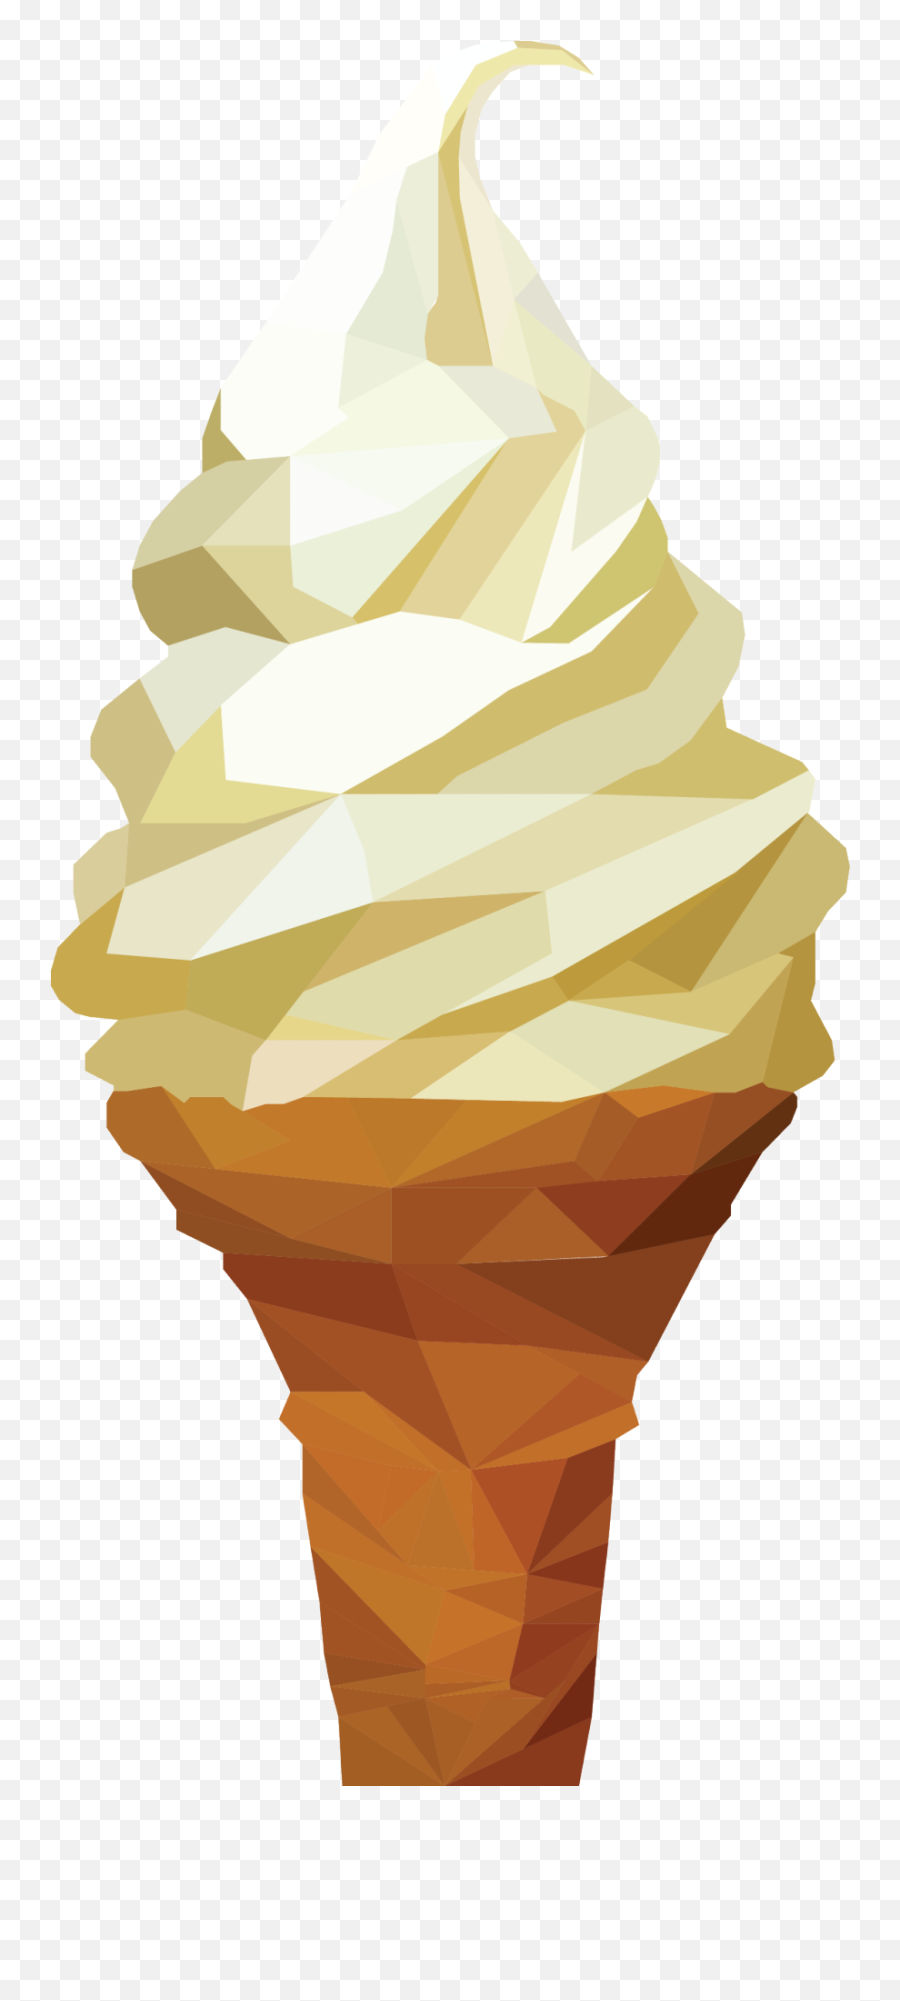 Ice Cream Vector - Ice Cream Discord Emote Hd Png Download Ice Cream Emote Discord Emoji,Pepsi Ice Cream Emoji